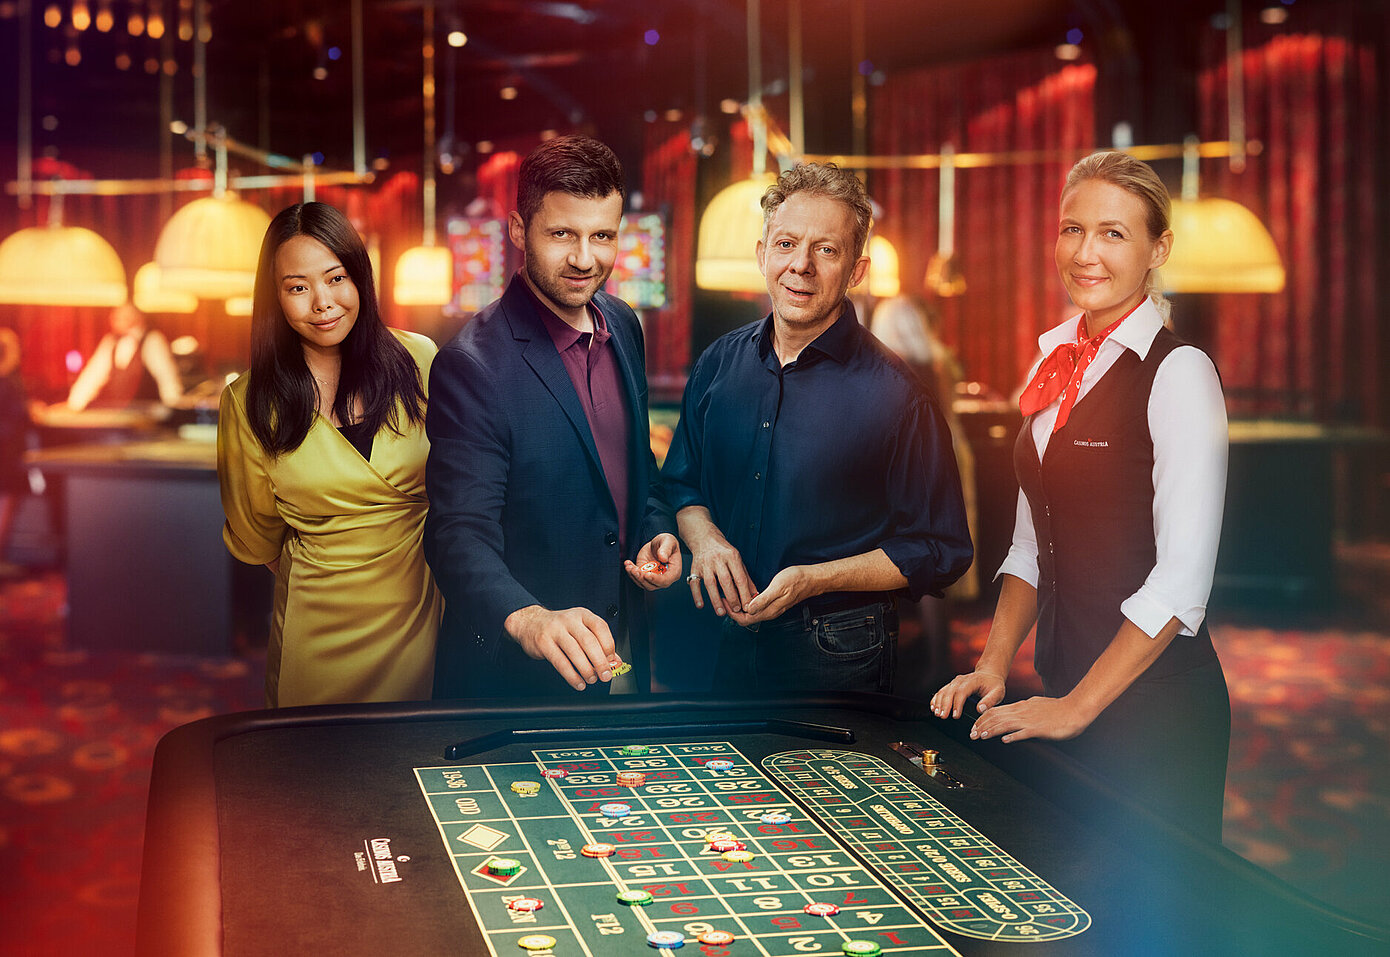 Wird online casino ohne registrierung jemals sterben?